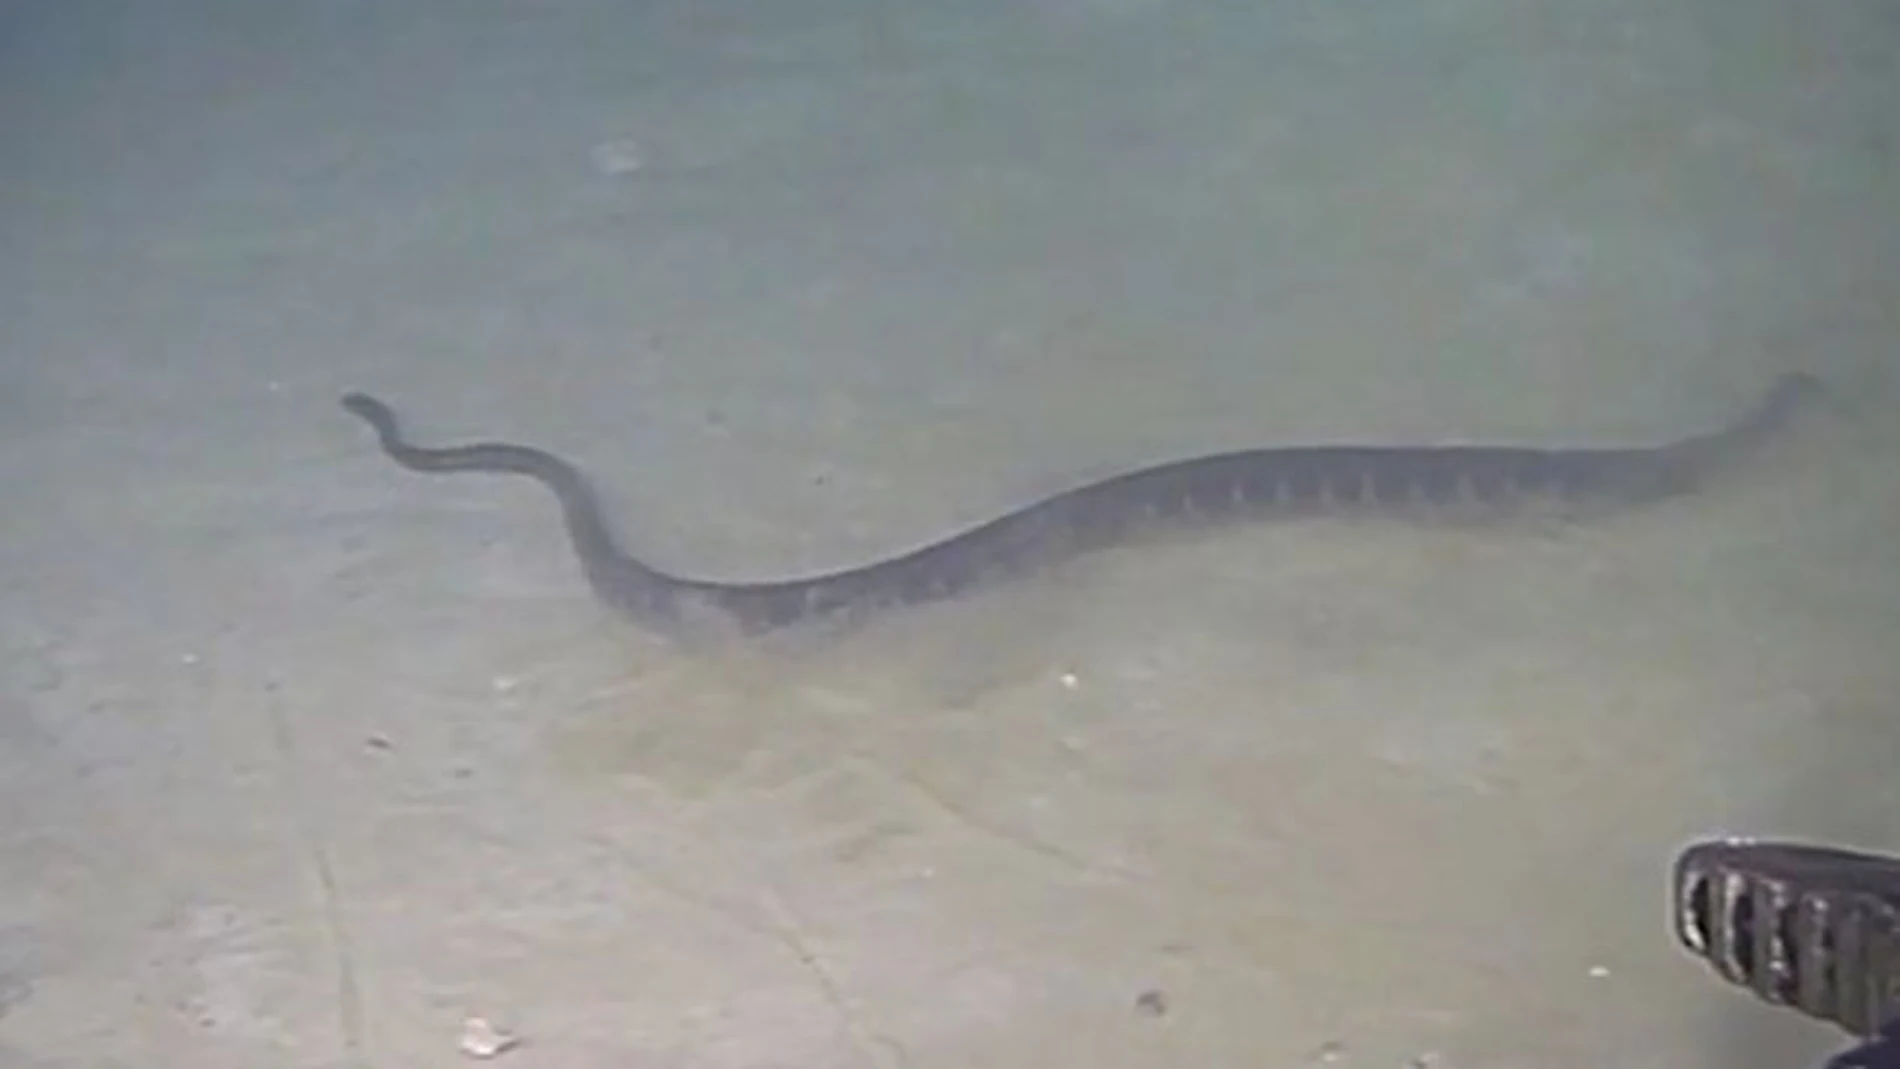 Una de las serpientes marinas captada a 240 metros de profundidad en julio de 2017. / INPEX-operated Ichthys LNG Project